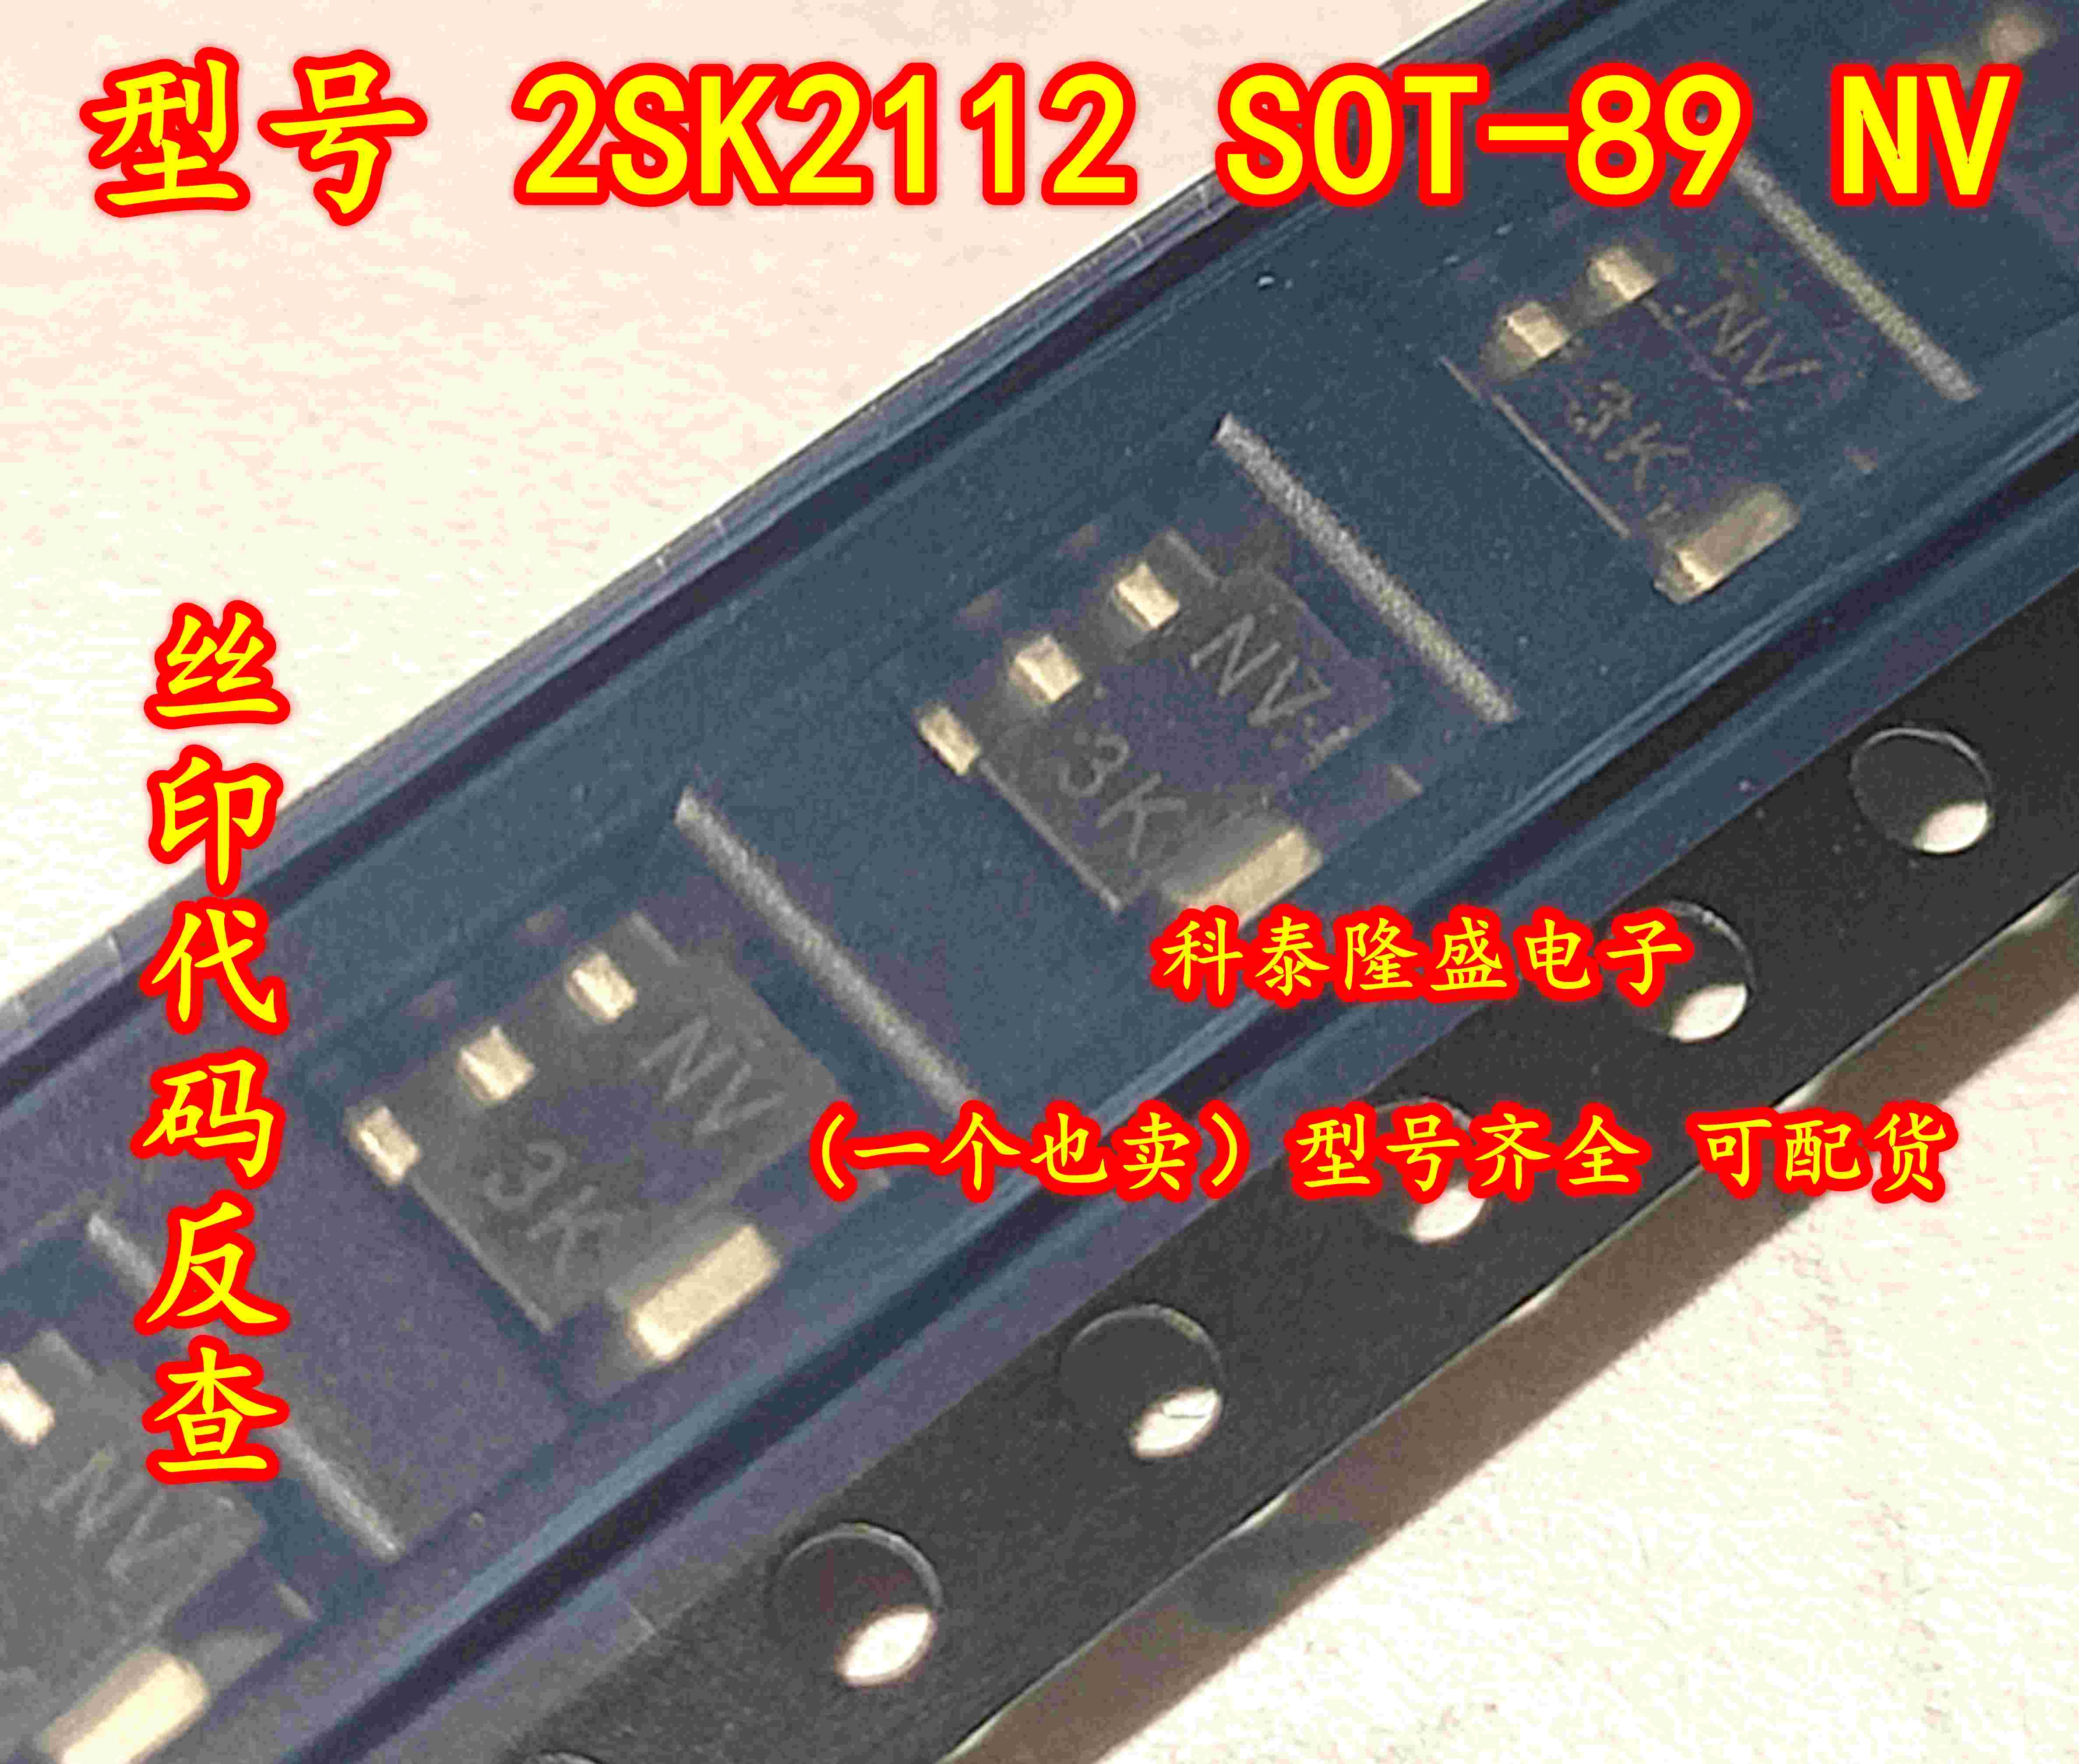 全新原装 2SK2112-T1-AZ 2SK2112 SOT-89 丝印NV MOS高速开关管管